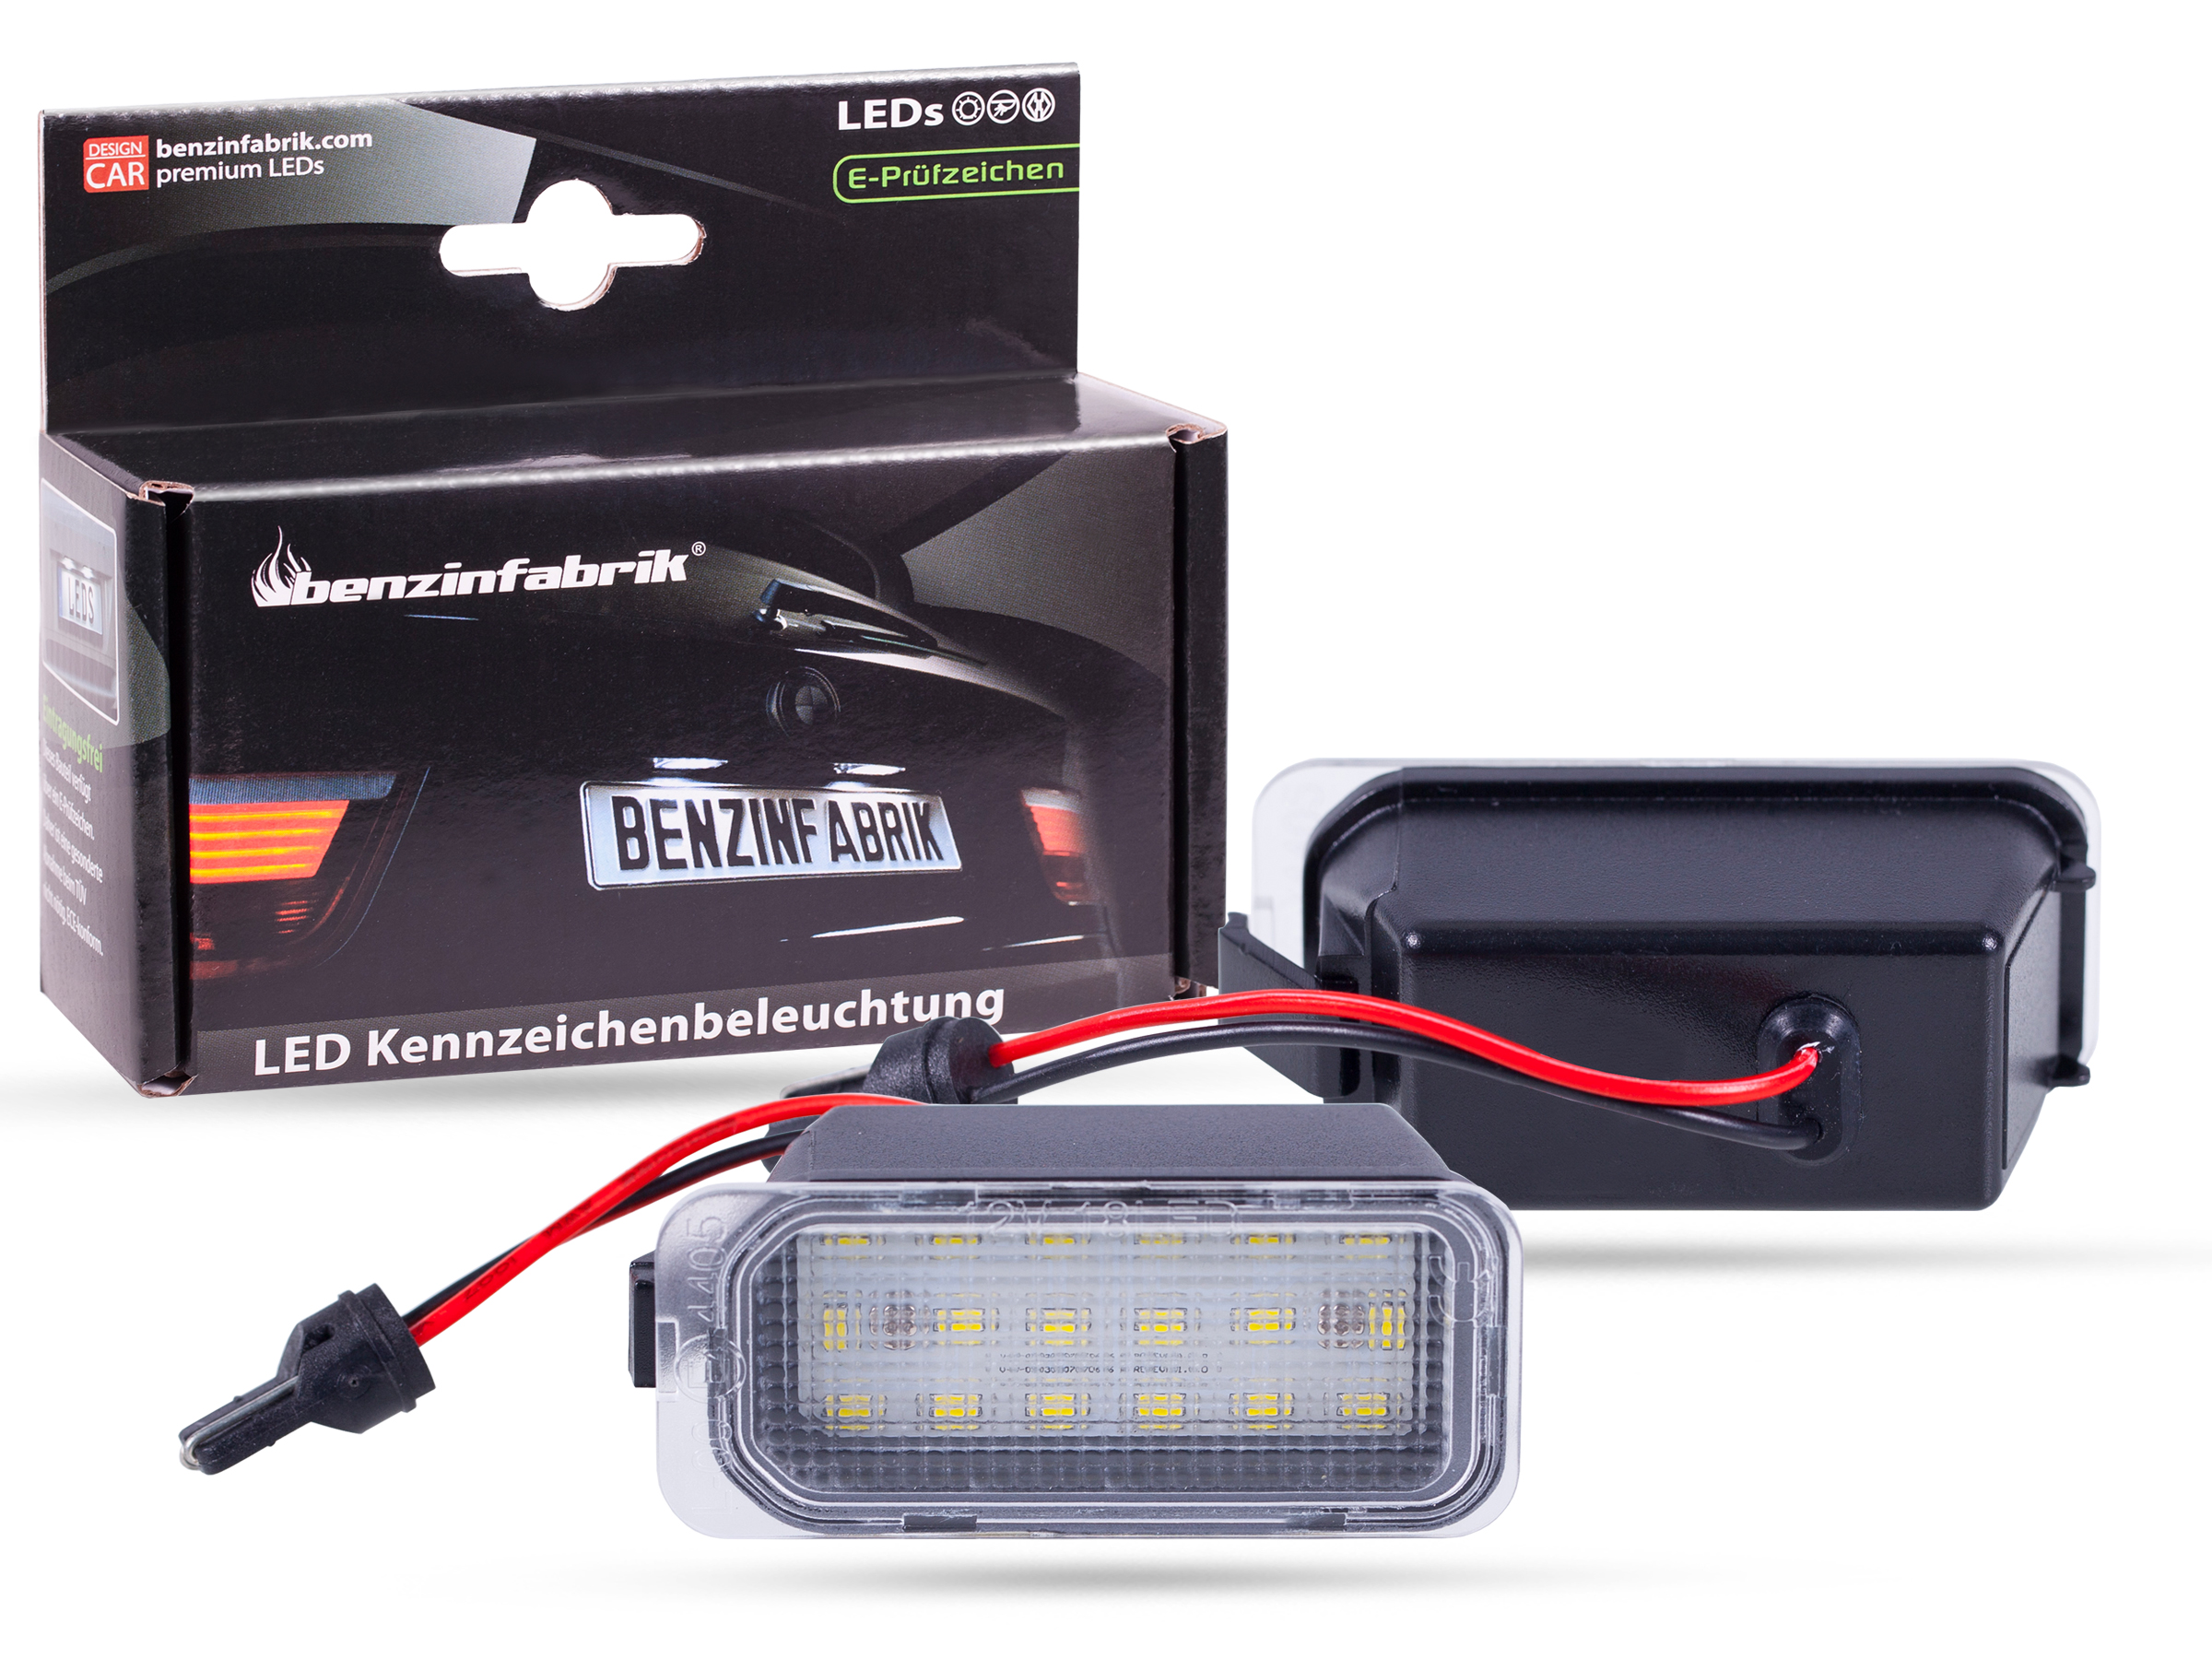 LED Kennzeichenbeleuchtung Module Ford Tourneo Custom, mit E-Prüfzeichen, Brandneue Produkte